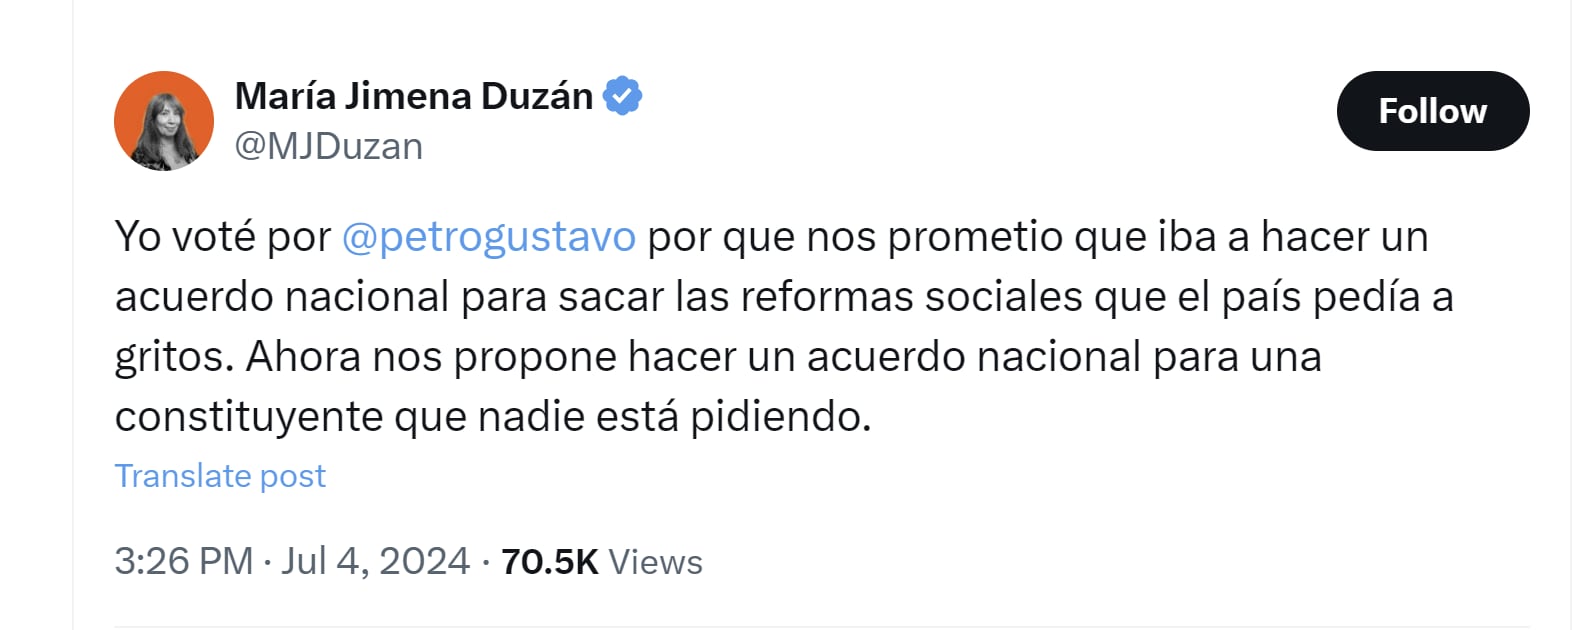 María Jimena Duzán aseguró que nadie está pidiendo la constituyente que ha promovido el presidente Gustavo Petro - crédito @MJDuzan/X